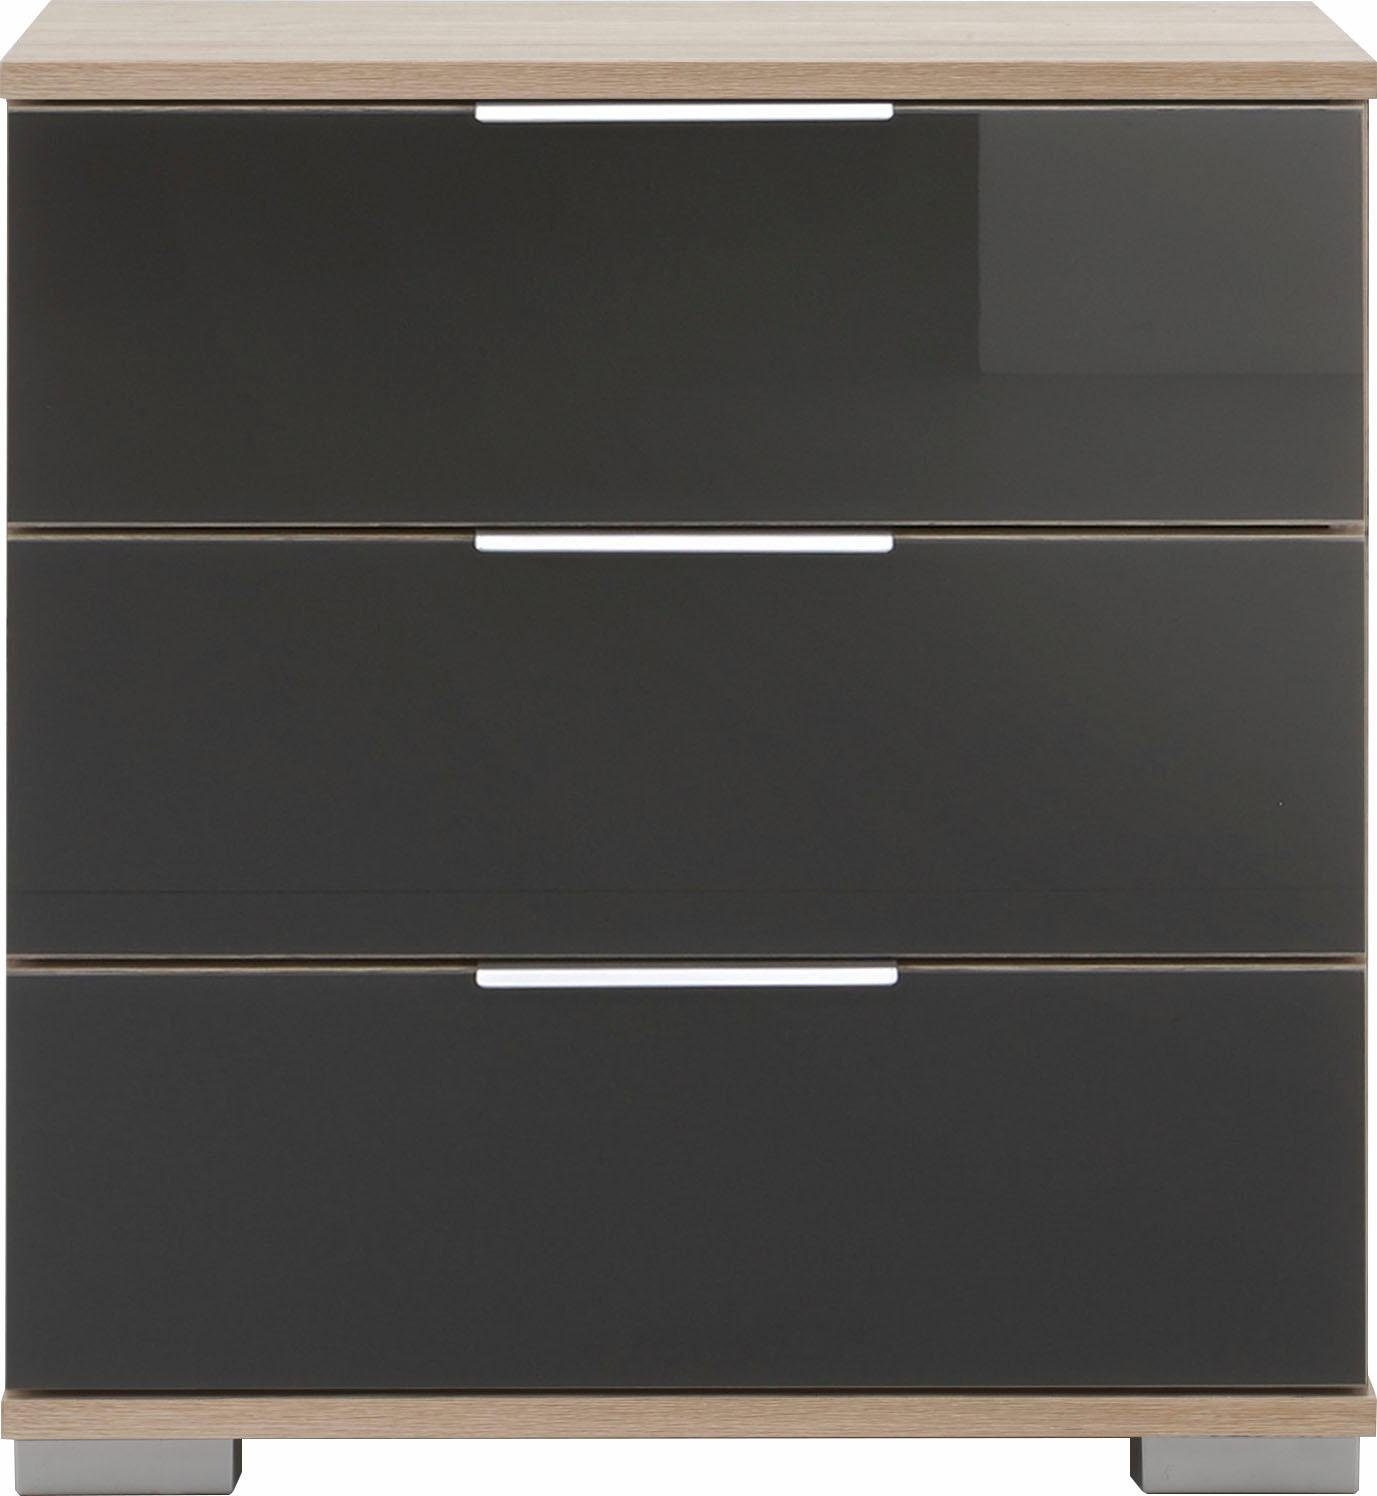 Wimex Nachtkonsole Easy, mit oder Glas- Spiegelfront hell/Grauglas struktureichefarben